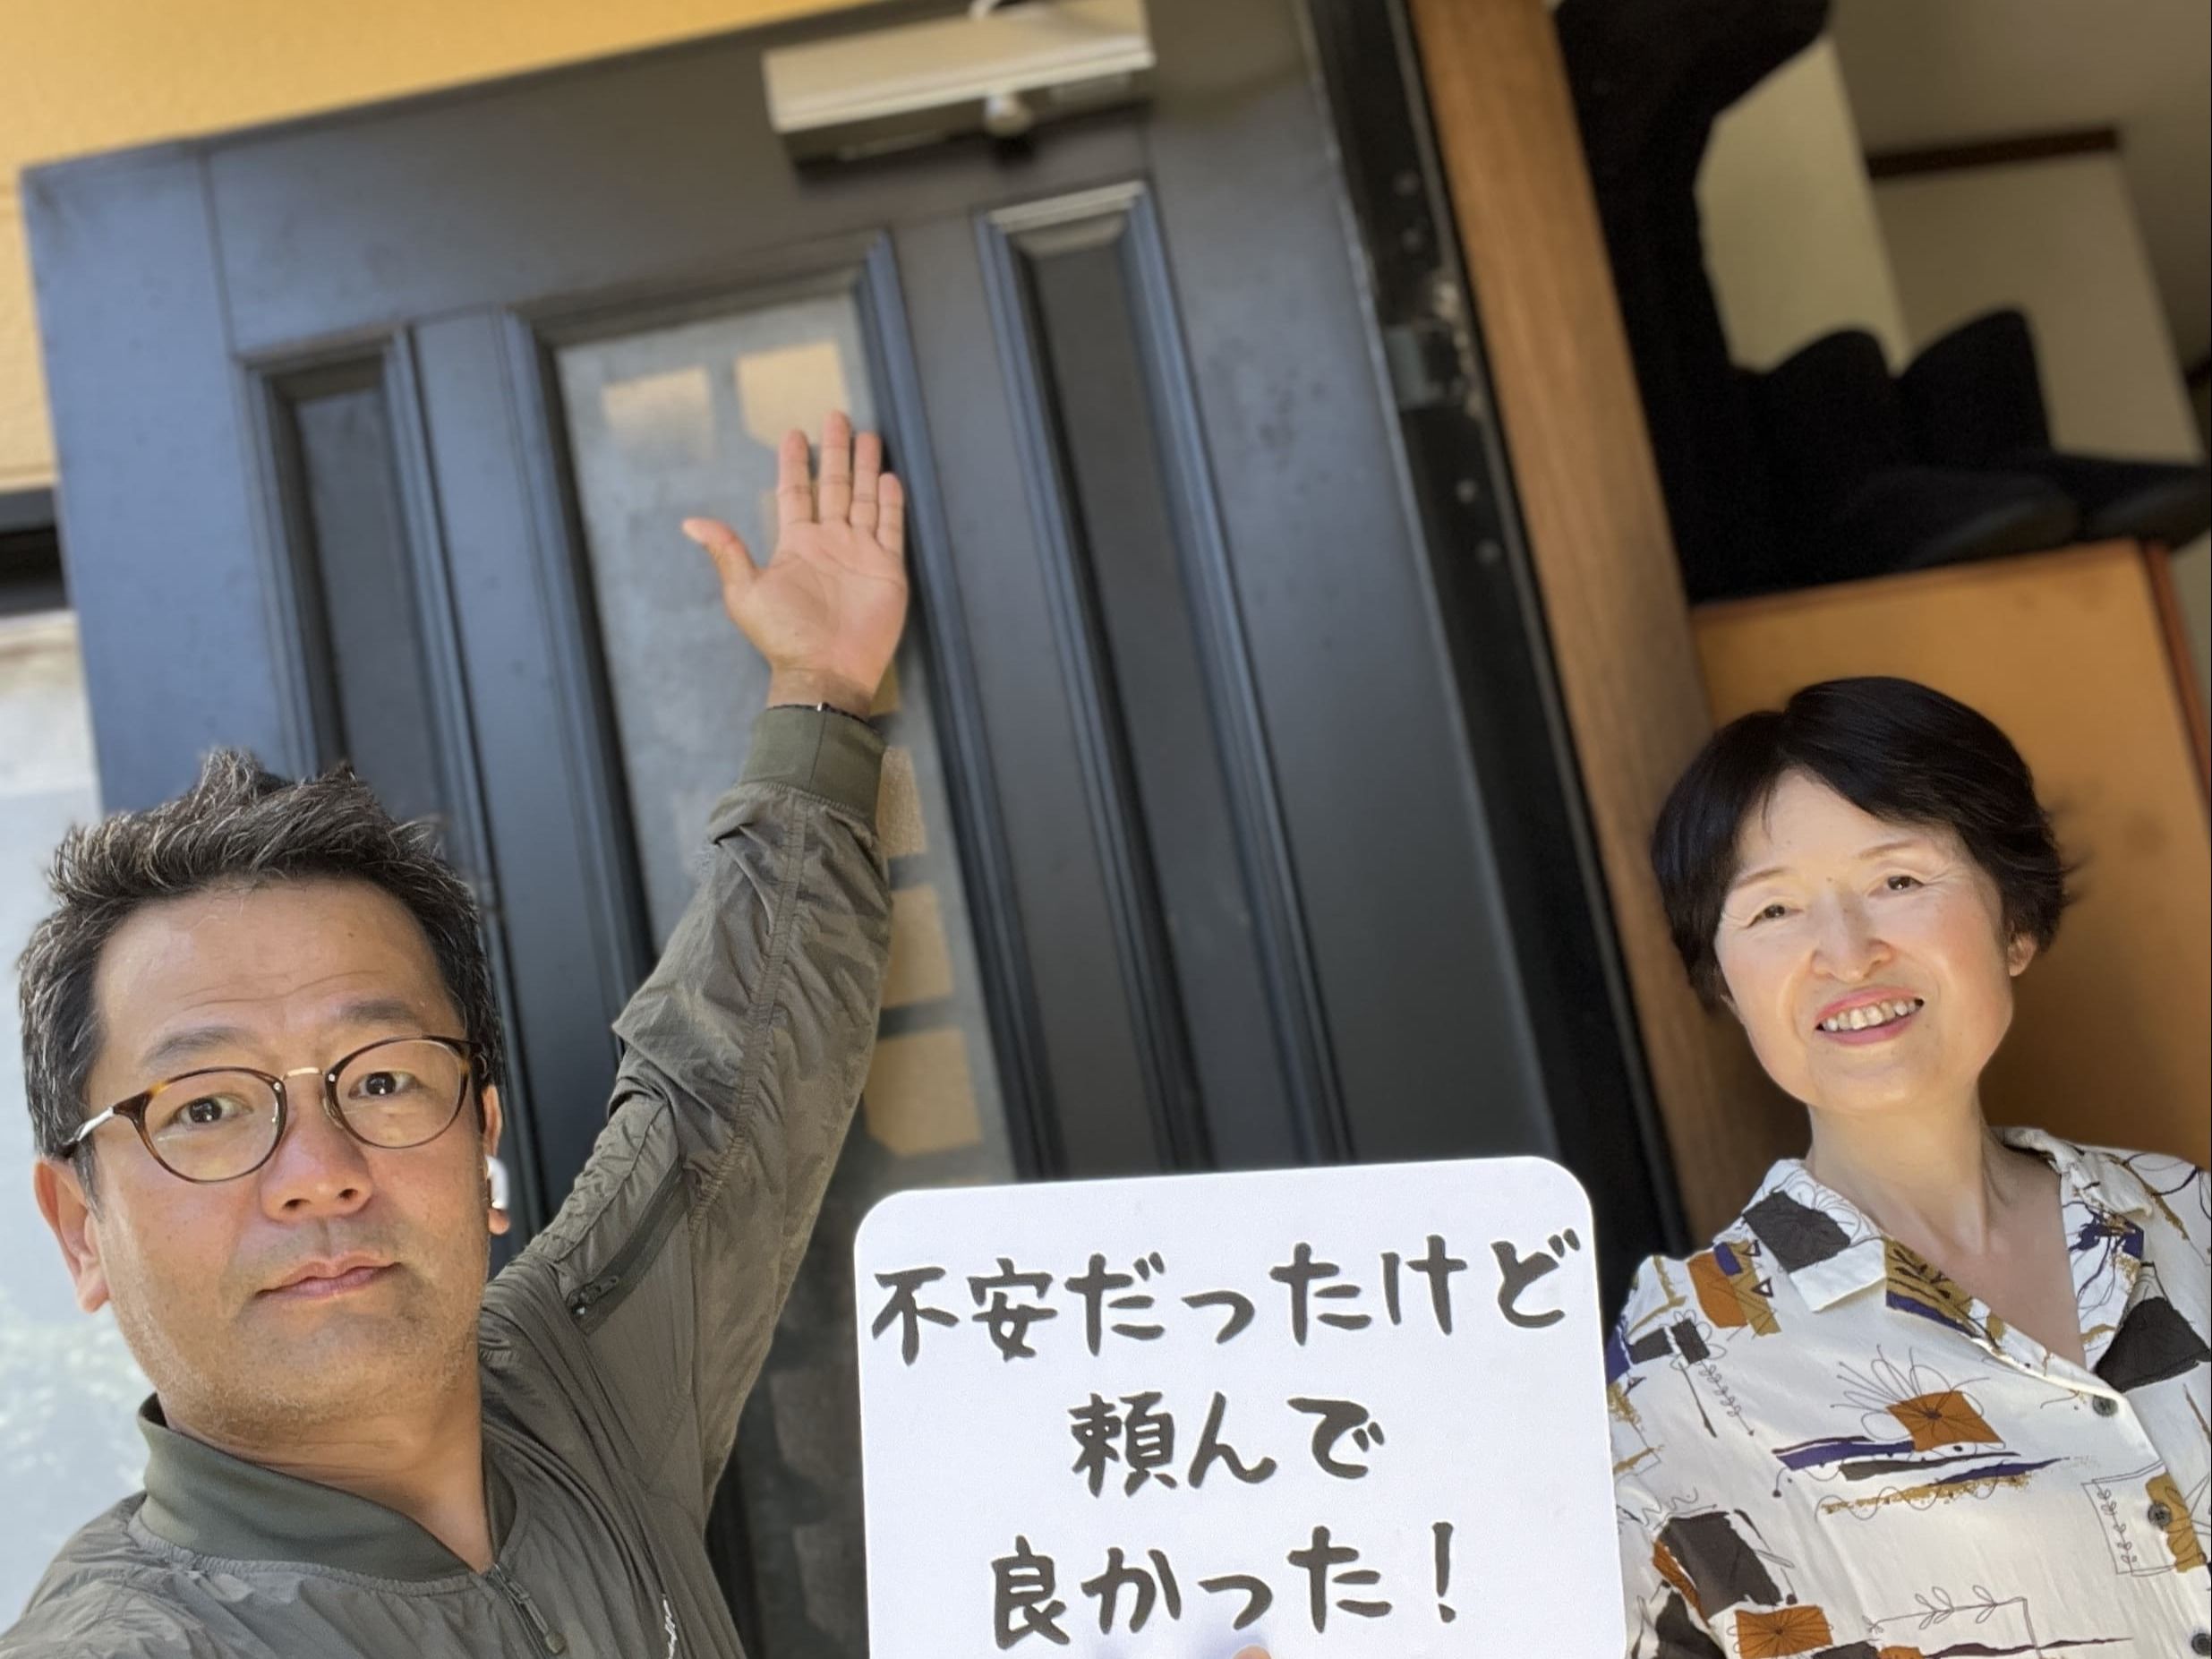 【坂戸市地域】カギとドア修理コバヤシの店内・外観画像3